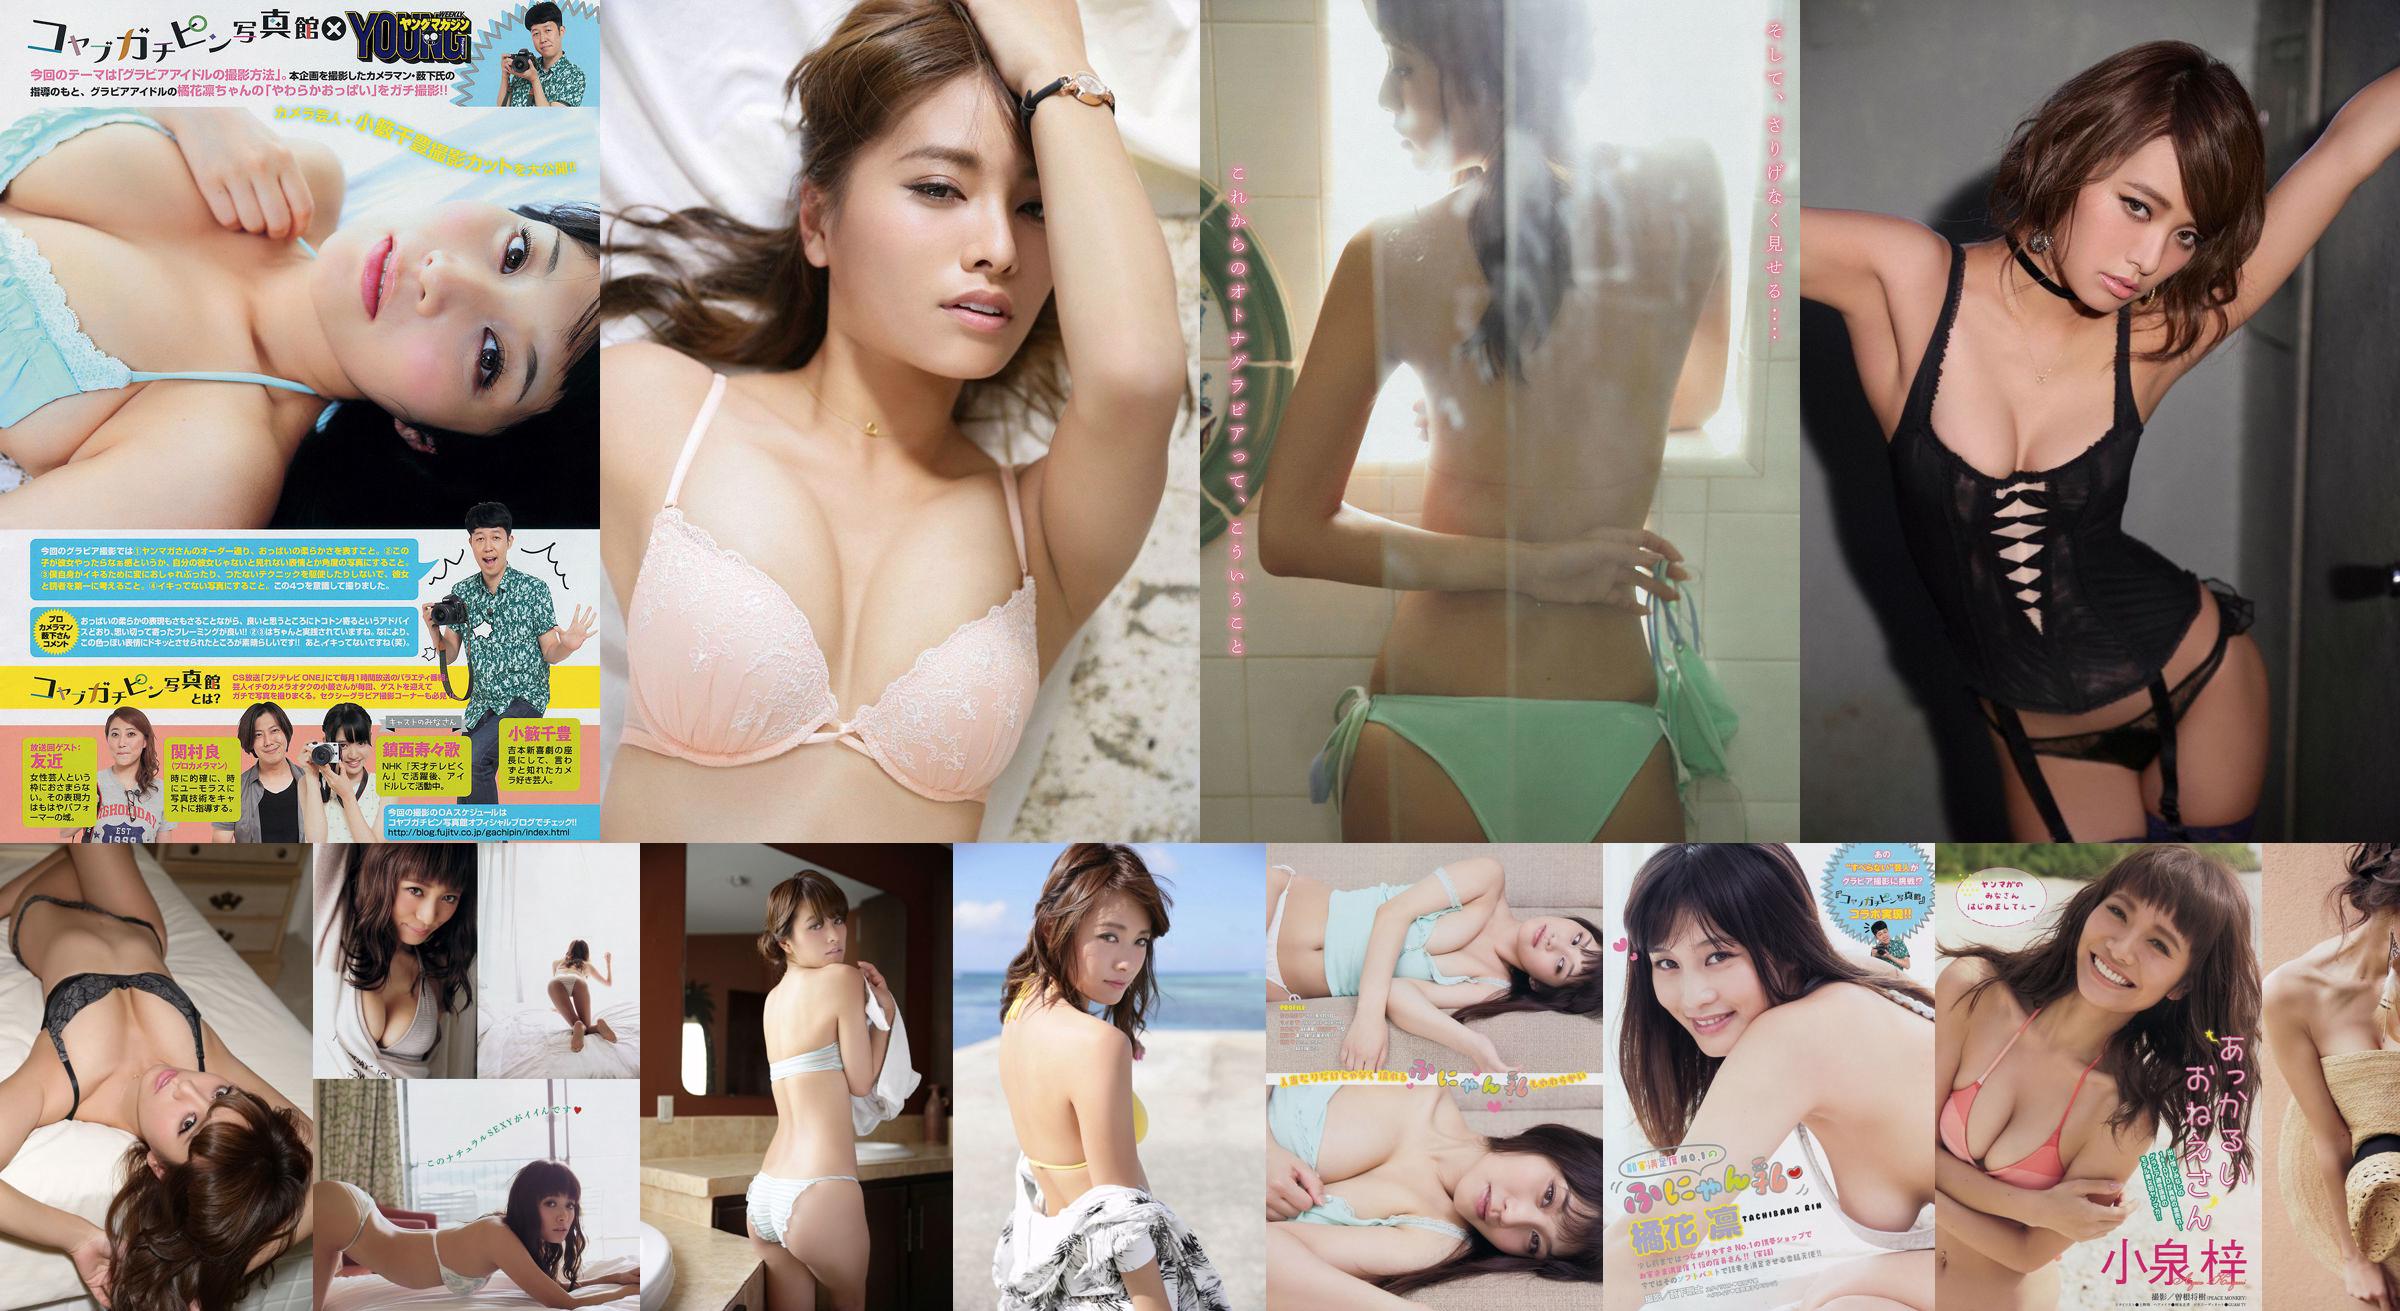 [Young Magazine] Azusa Koizumi Tachibana Rin 2014 No.43 Photo Magazine No.d7fb4d Pagina 2